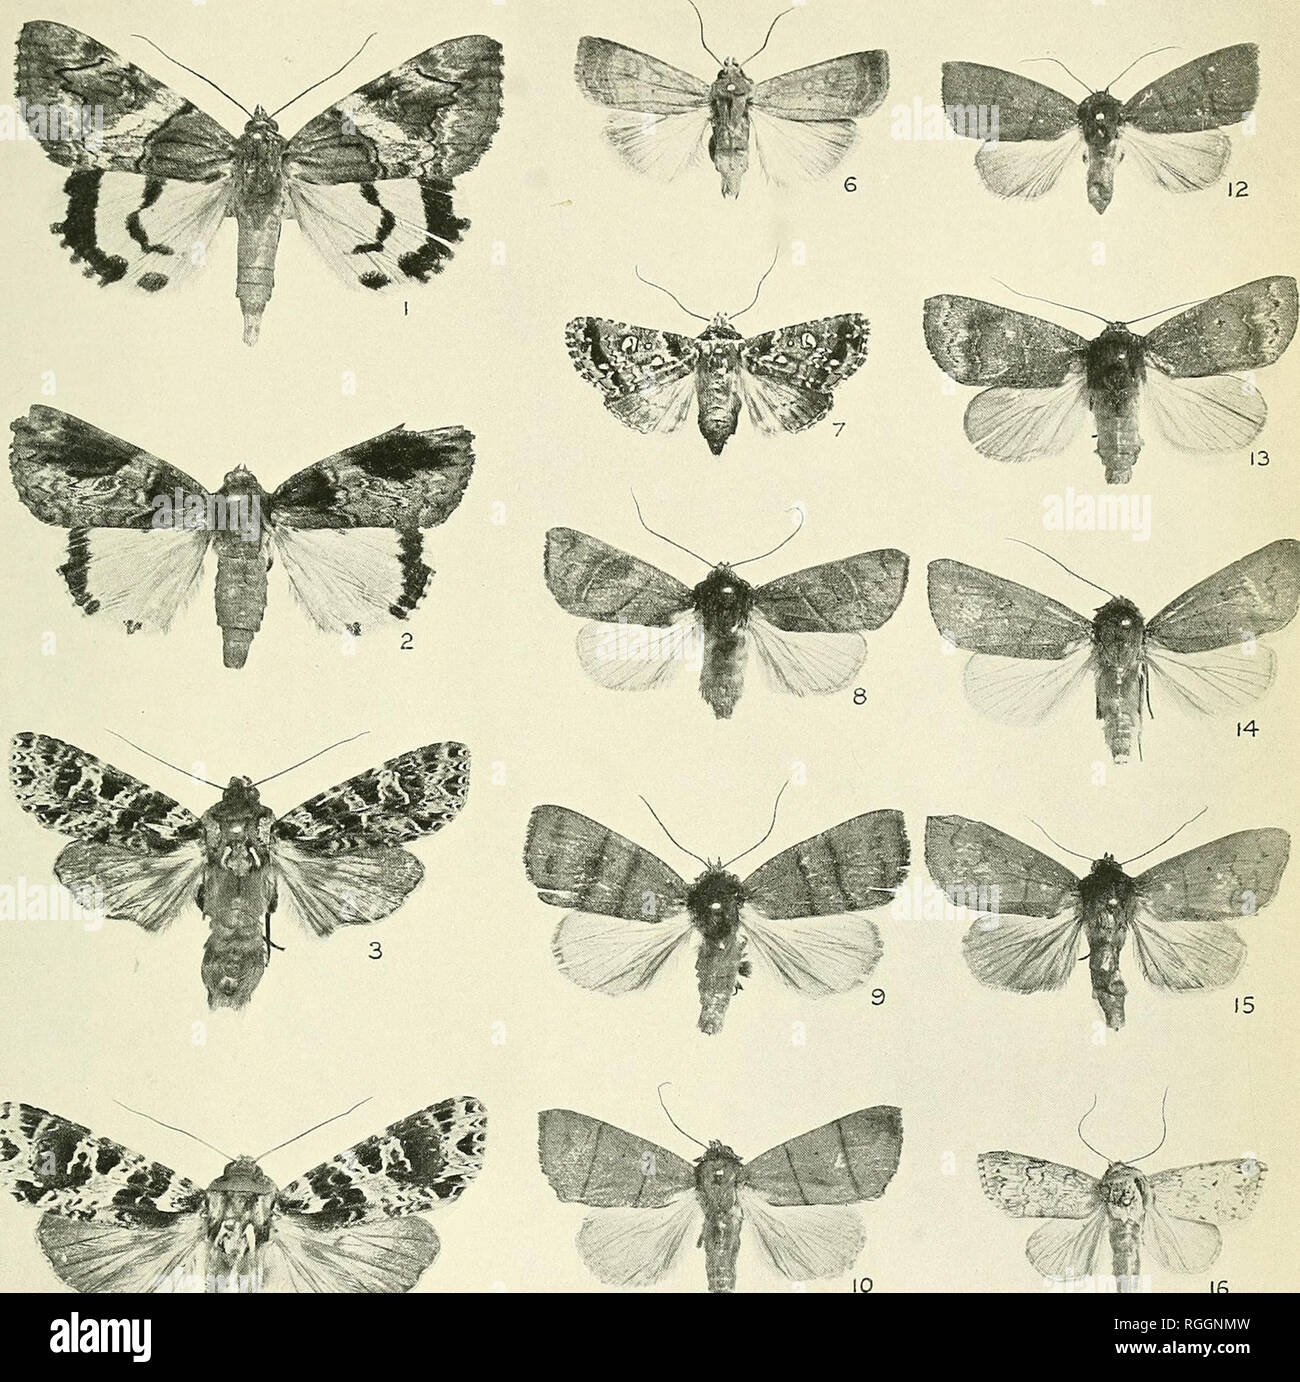 Boletín del Museo de la colina : una revista de lepidopterology ;.  Lepidoptera; Lepidoptera. Placa XXII. Bol. Hill Mus. Vol I, 1924. Por favor  tenga en cuenta que estas imágenes son